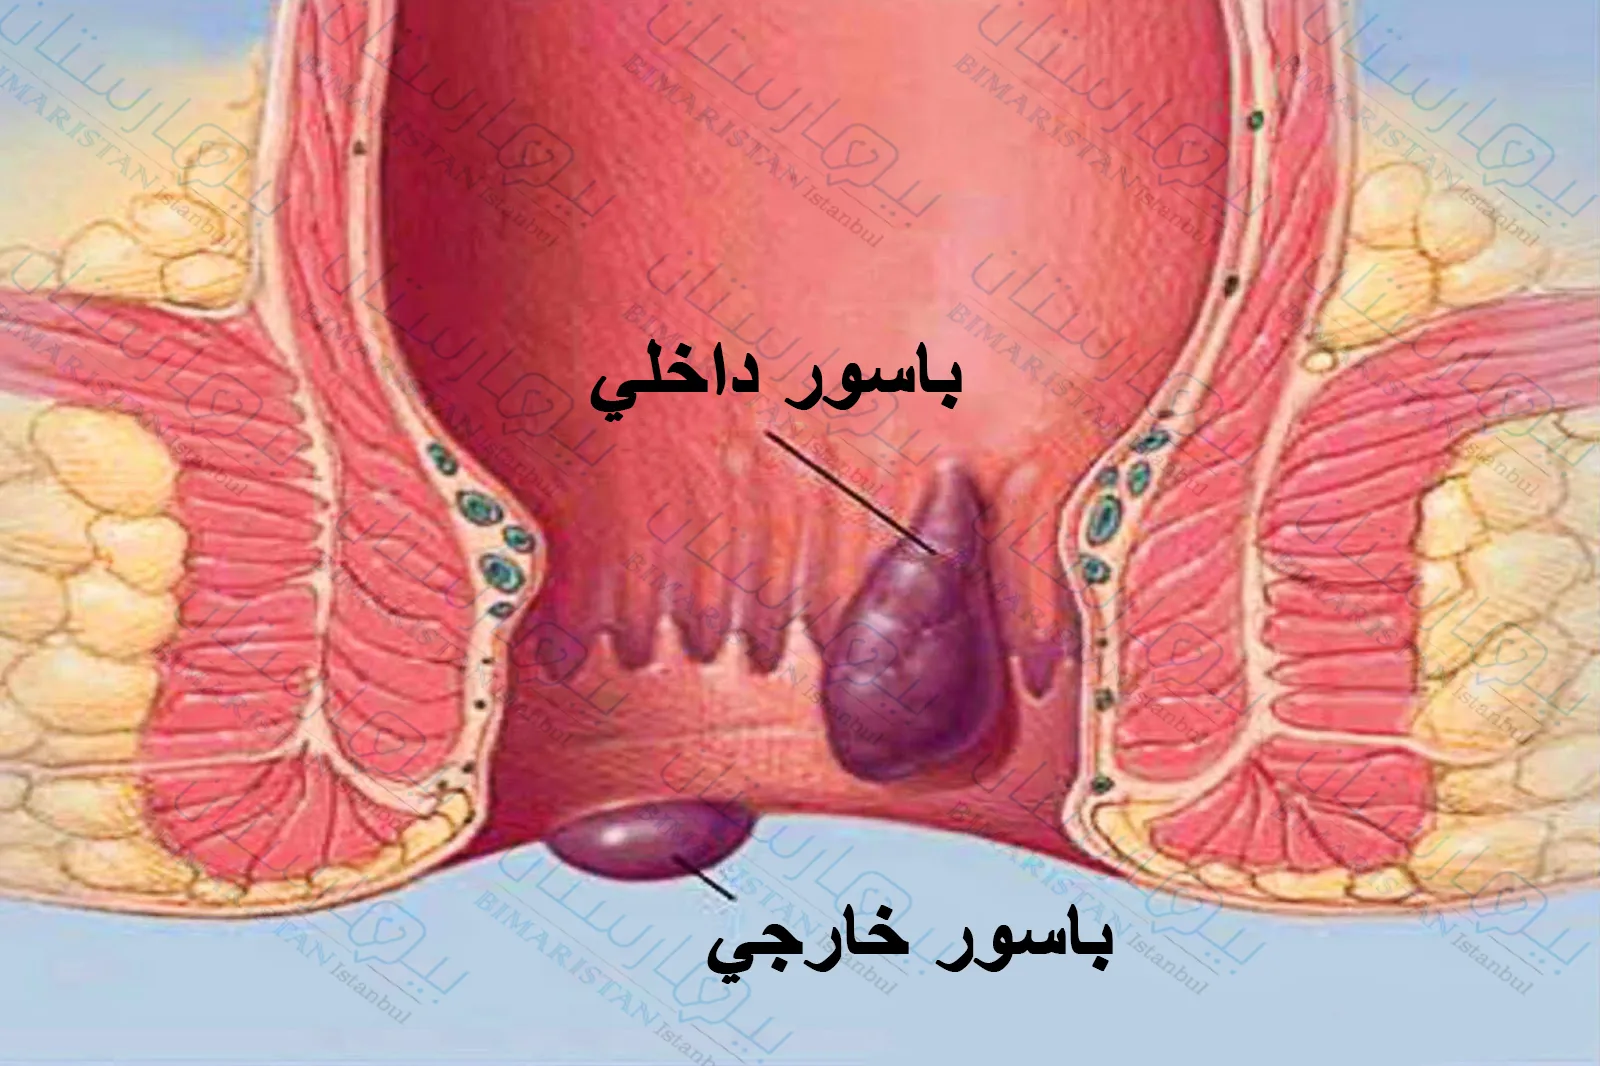 Types of hemorrhoids: internal hemorrhoids and external hemorrhoids